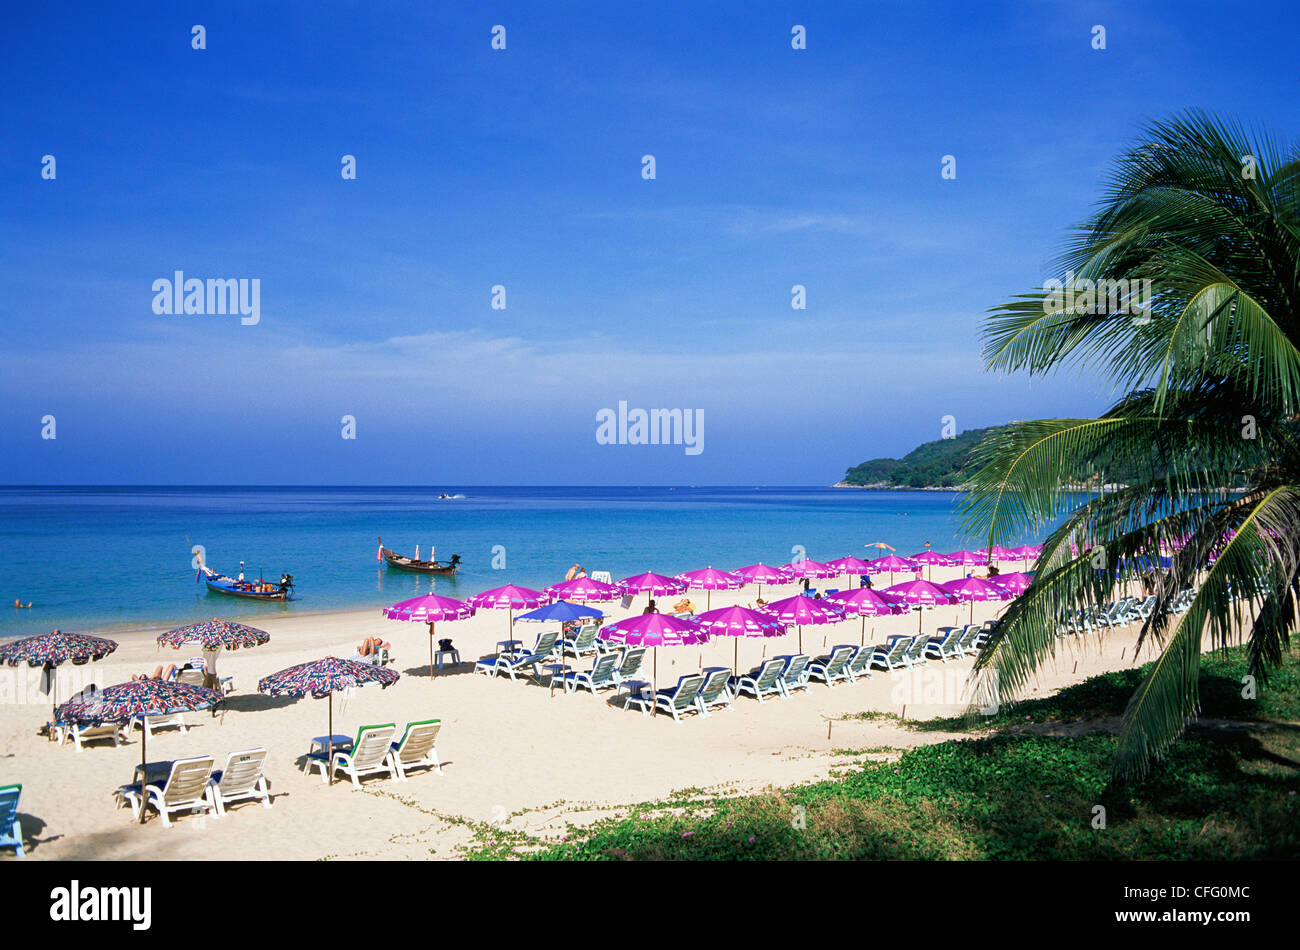 Thailand, Phuket, Kata Beach Stock Photo - Alamy